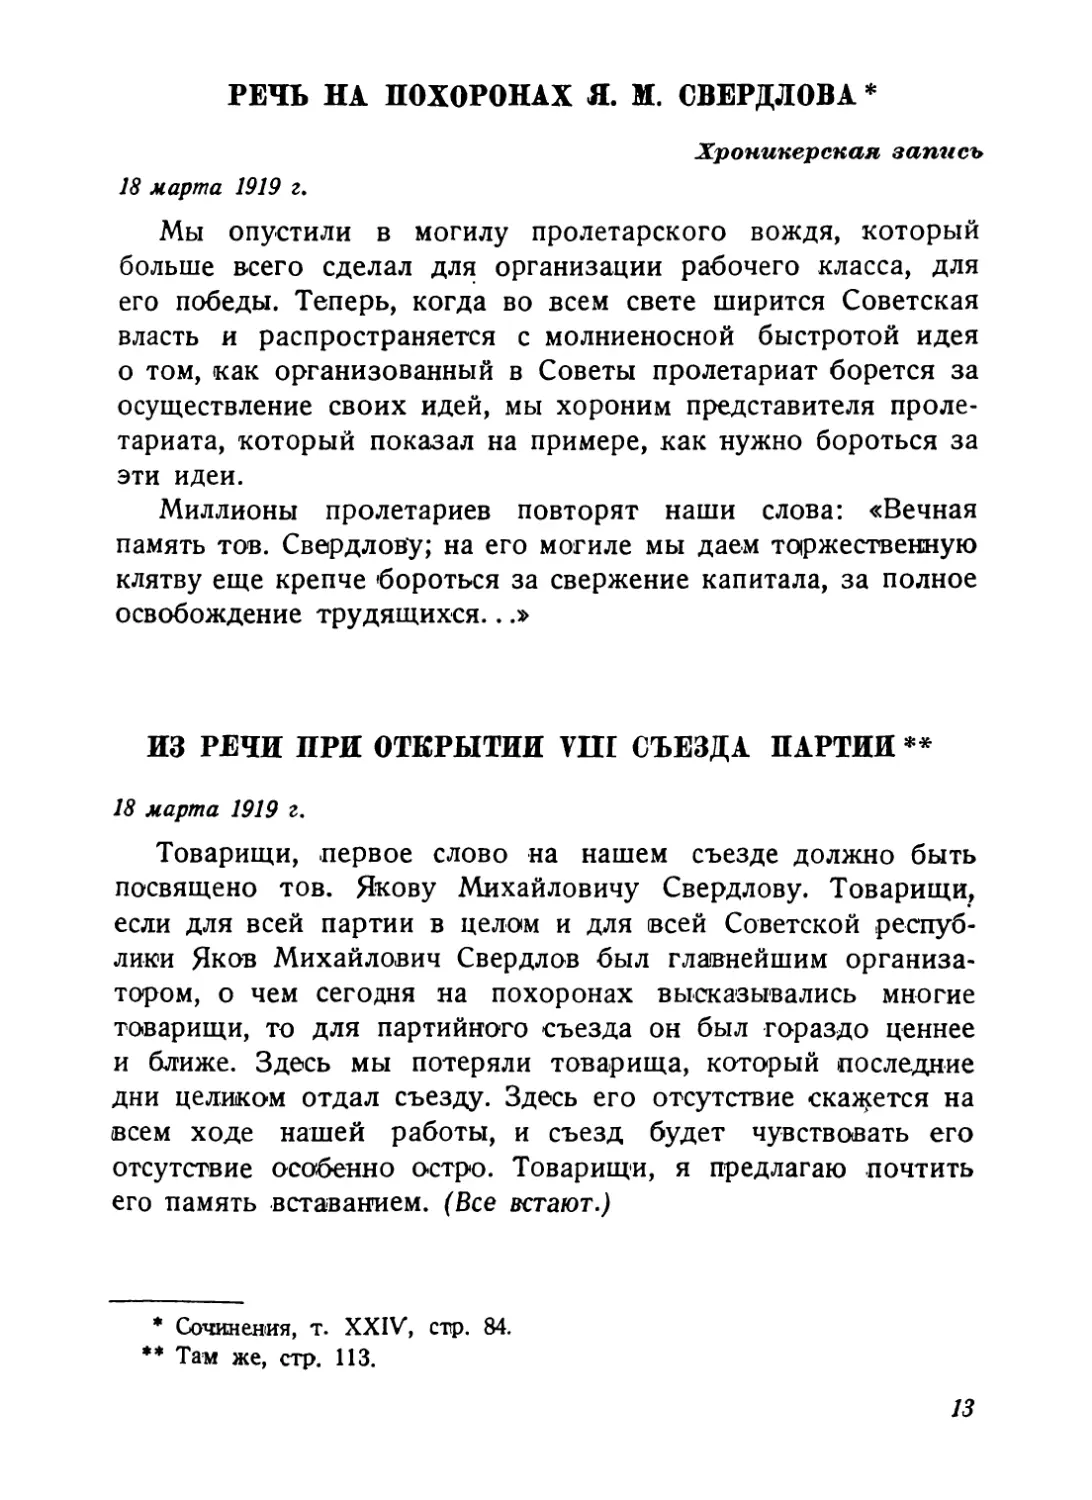 Речь на похоронах Я. М. Свердлова, 18 марта 1919 г
Из речи при открытии VIII съезда партии, 18 марта 1919 г